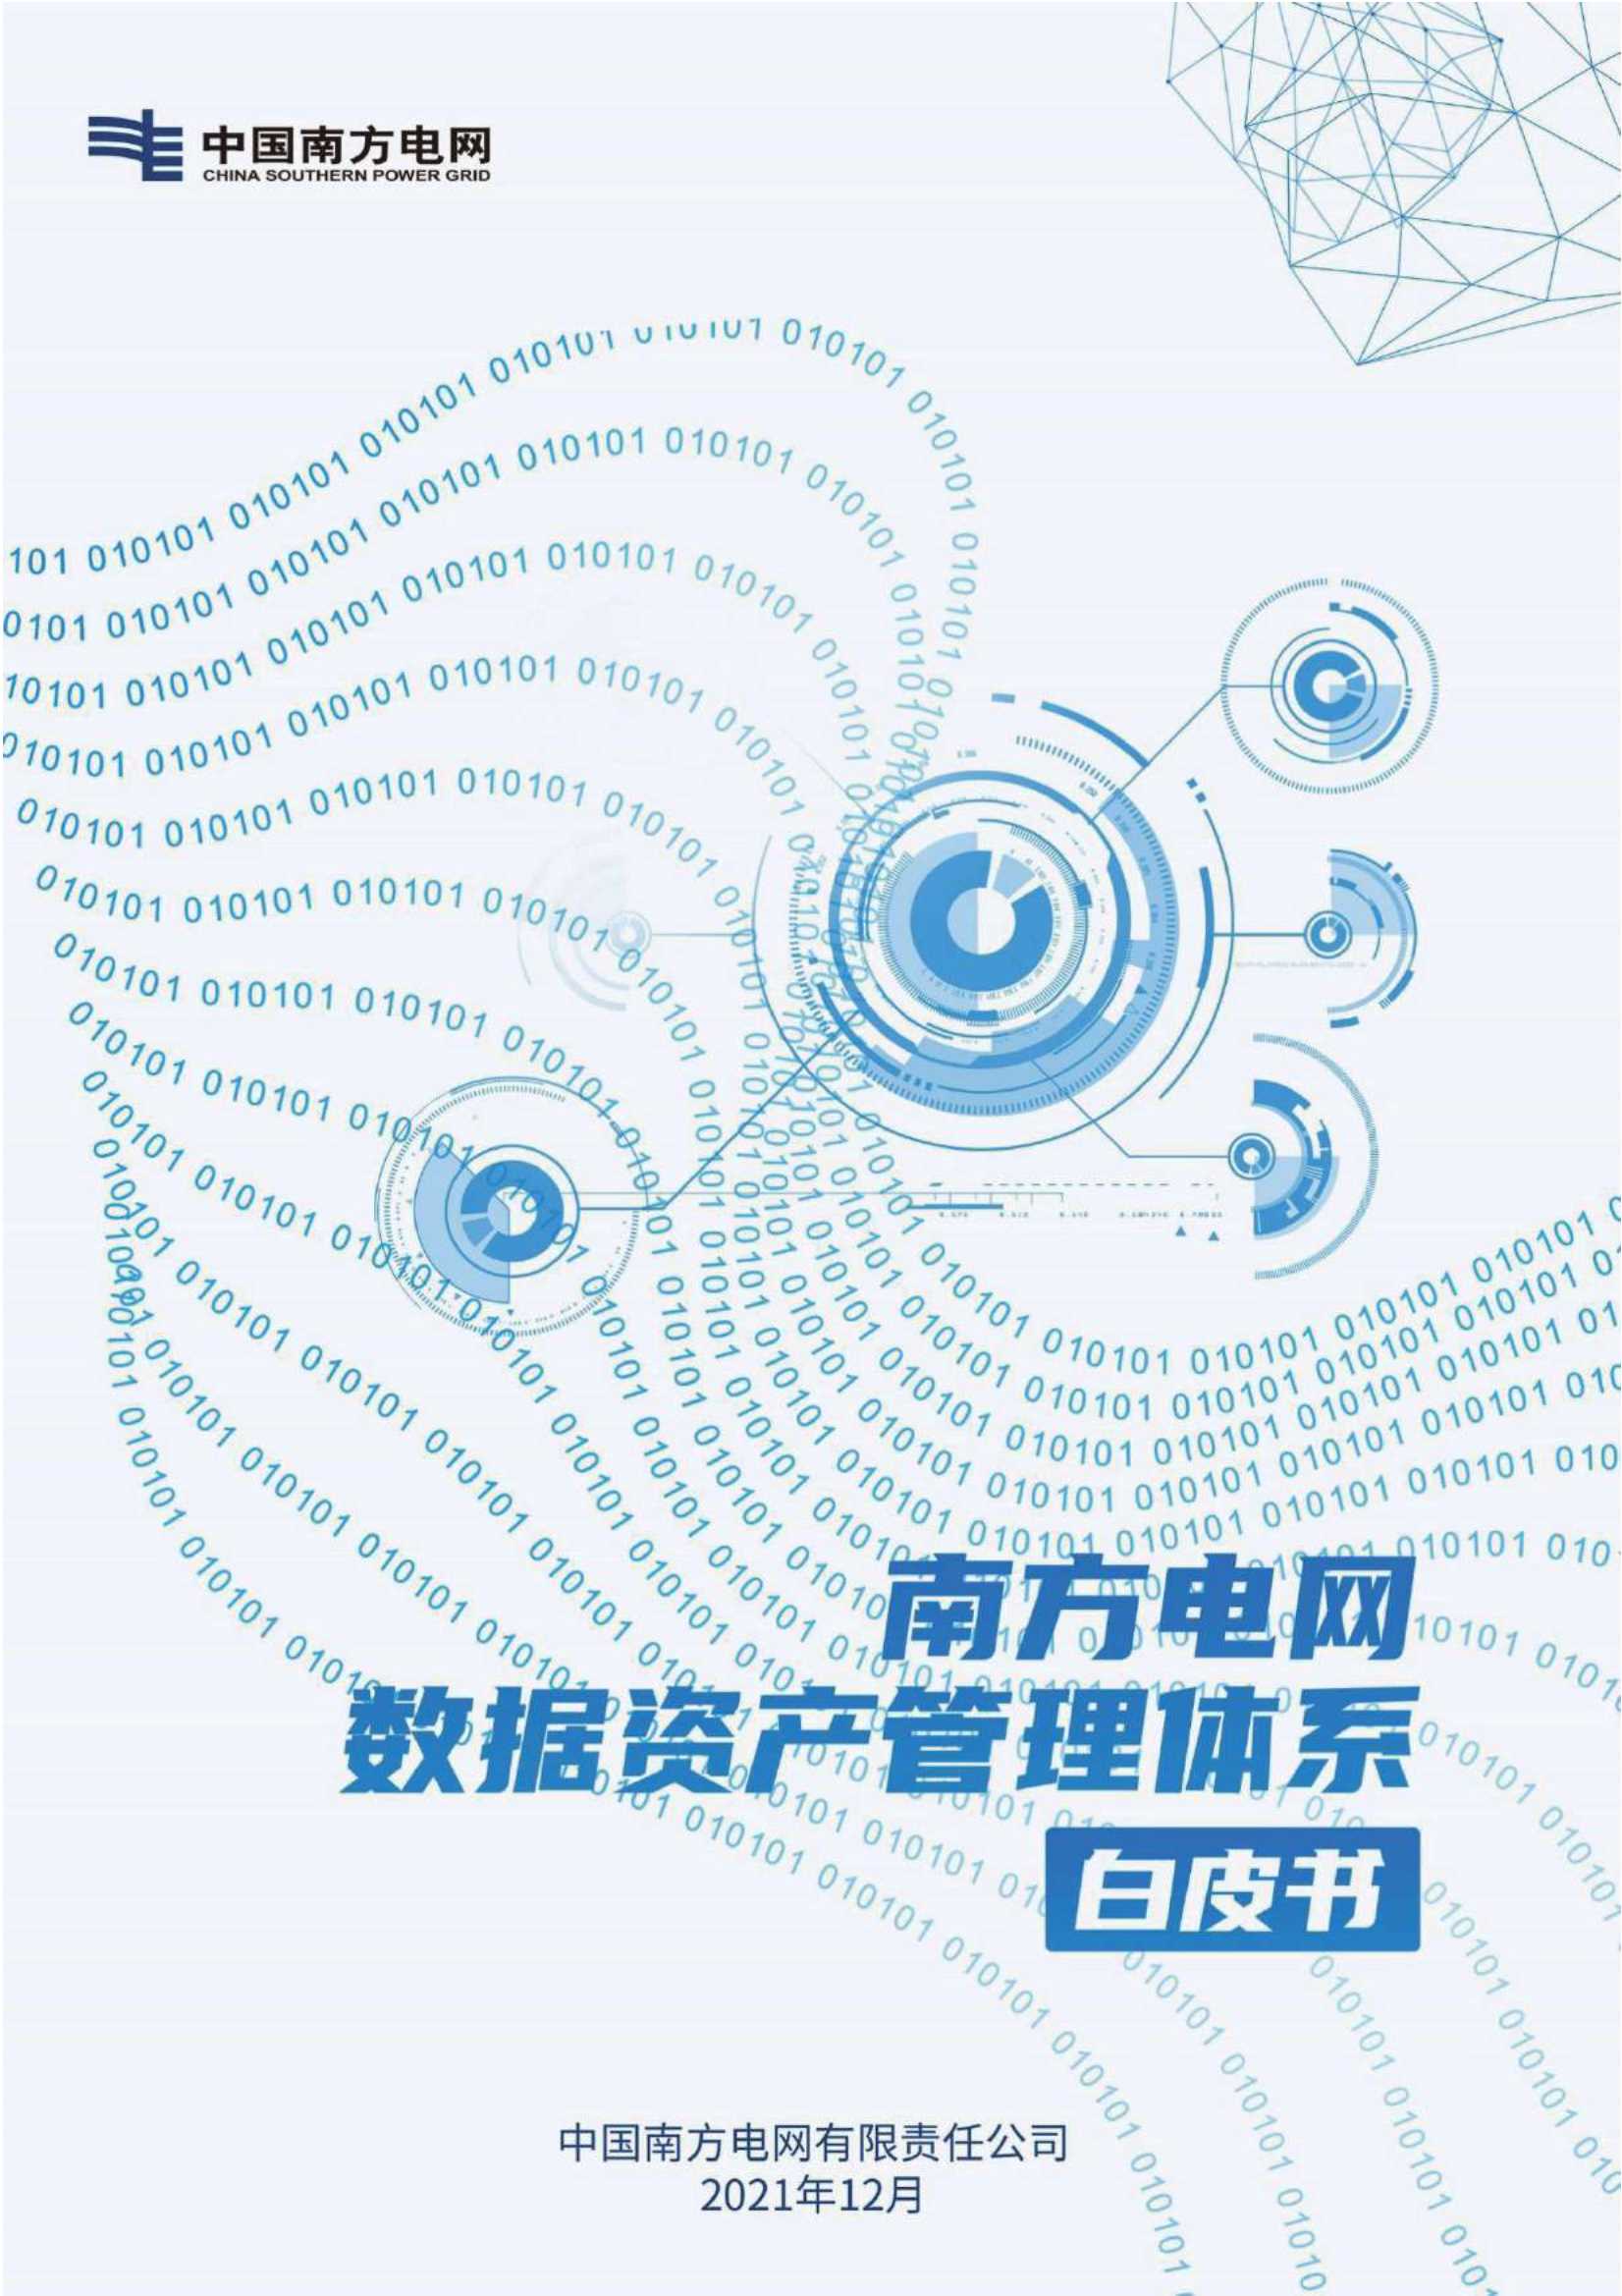 中国南方电网-南方电网数据资产管理体系白皮书-2021.12-71页